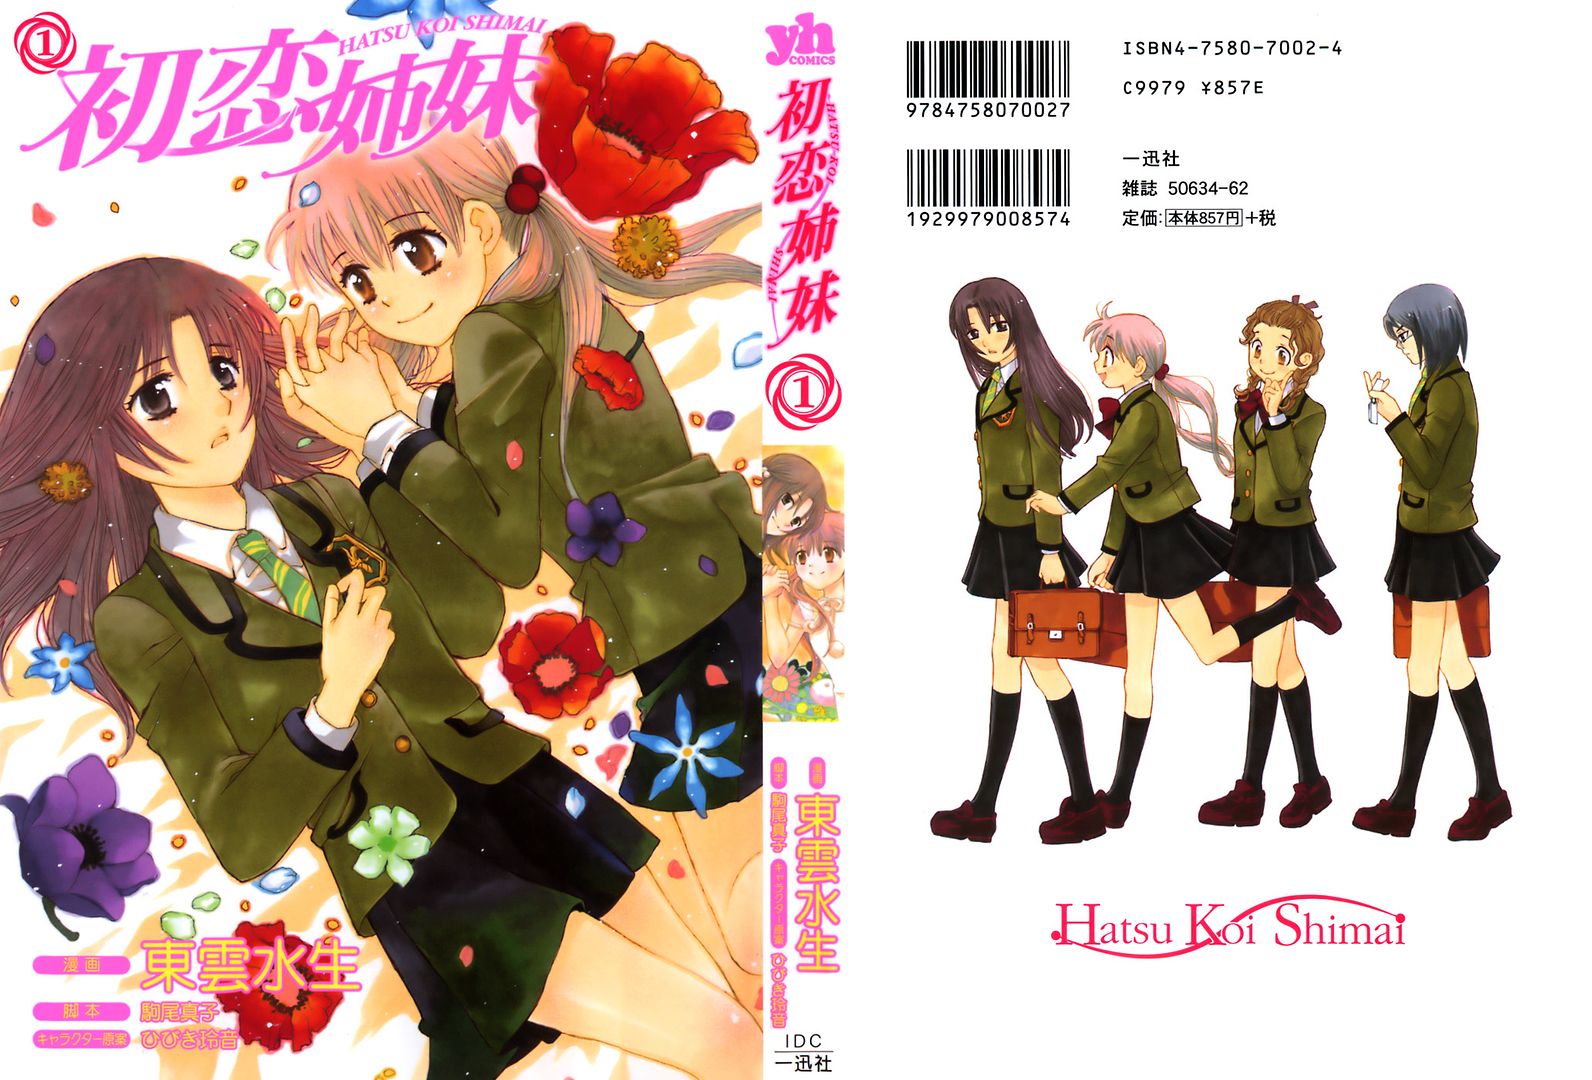 Hatsu Koi Shimai Cover.